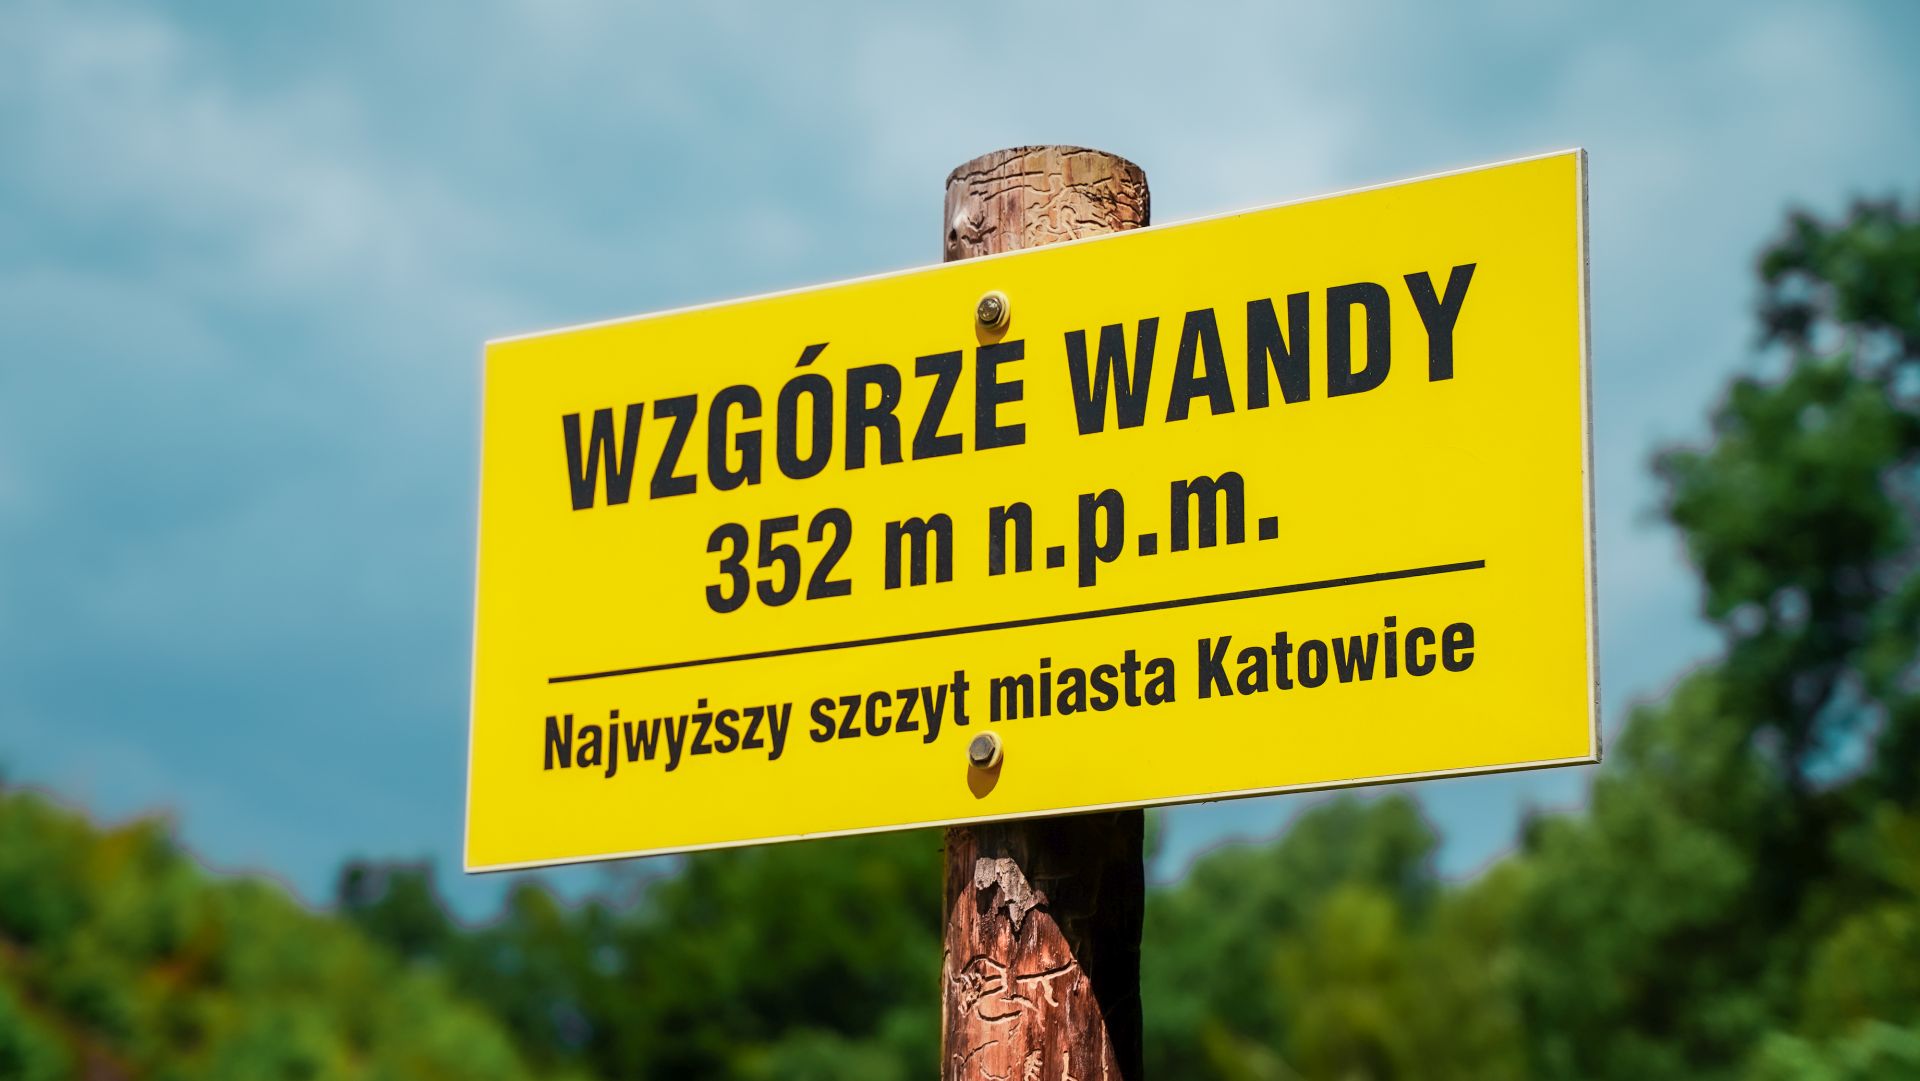 Fot. Grzegorz Bargieła/WKATOWICACH.eu. Najwyższy punkt w Katowicach znajduje się na Wzgórzu Wandy